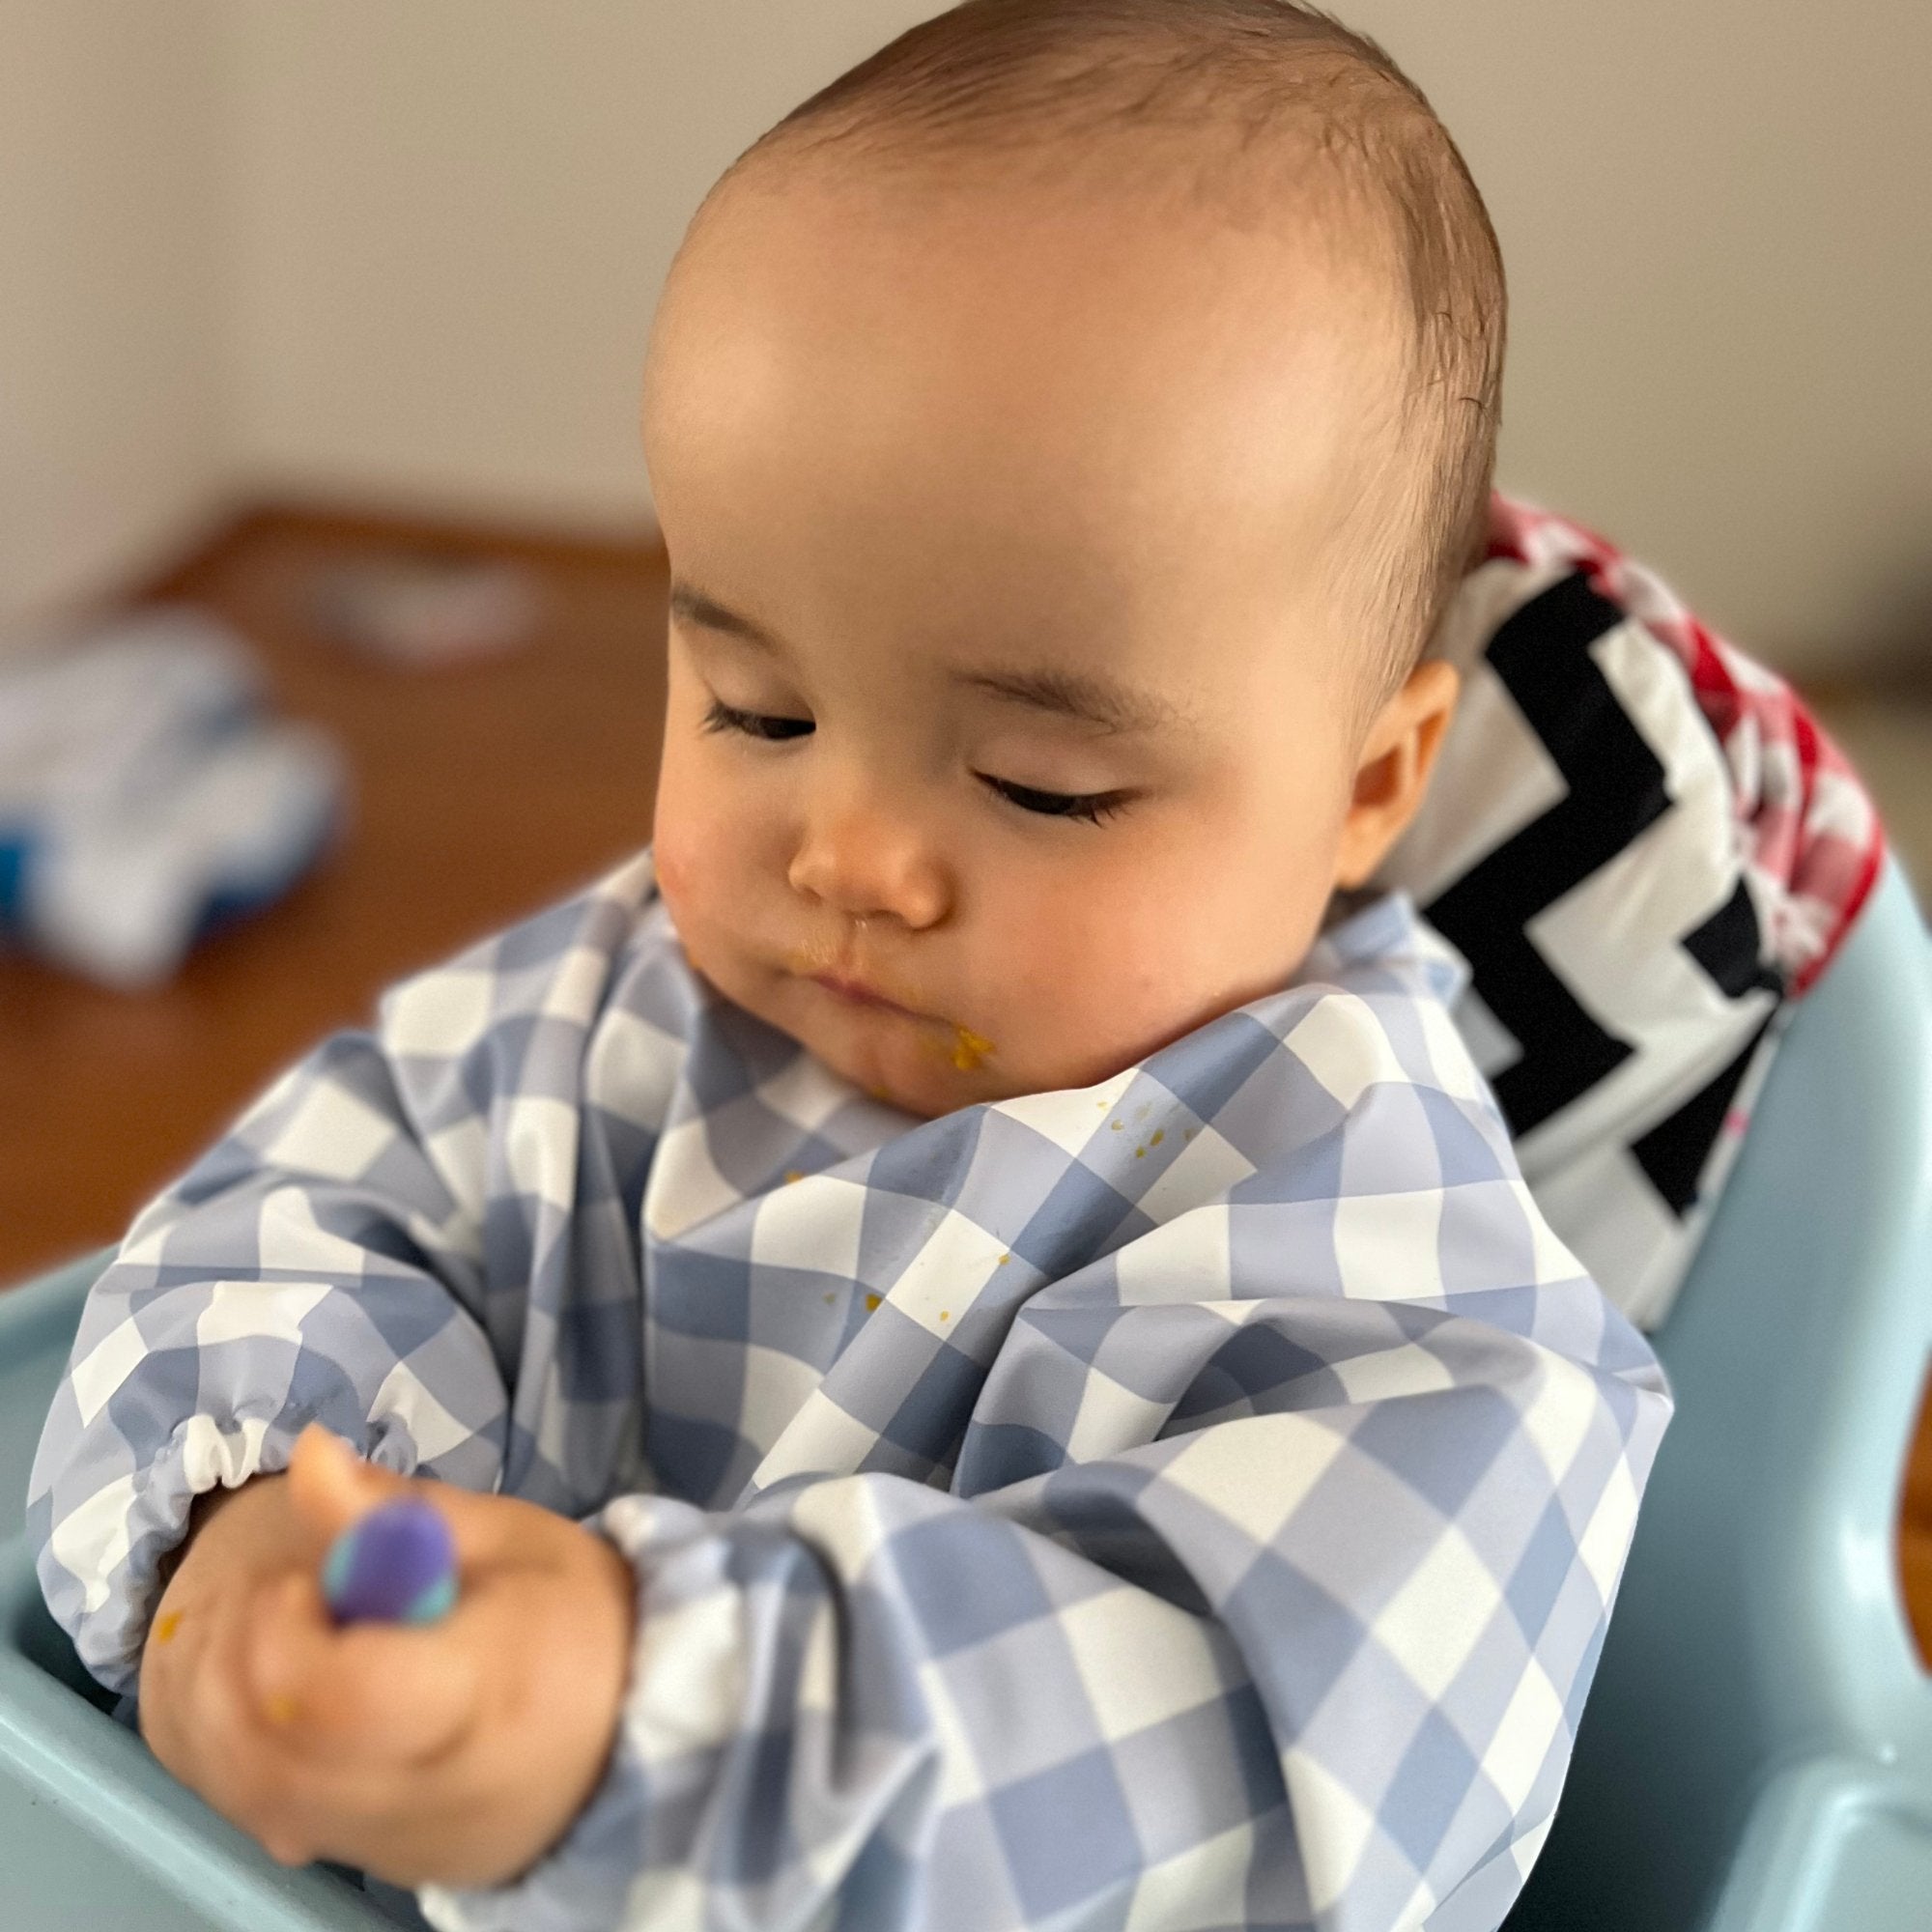 Messie Smock Bib – Blue Gingham (Baby & Toddler)